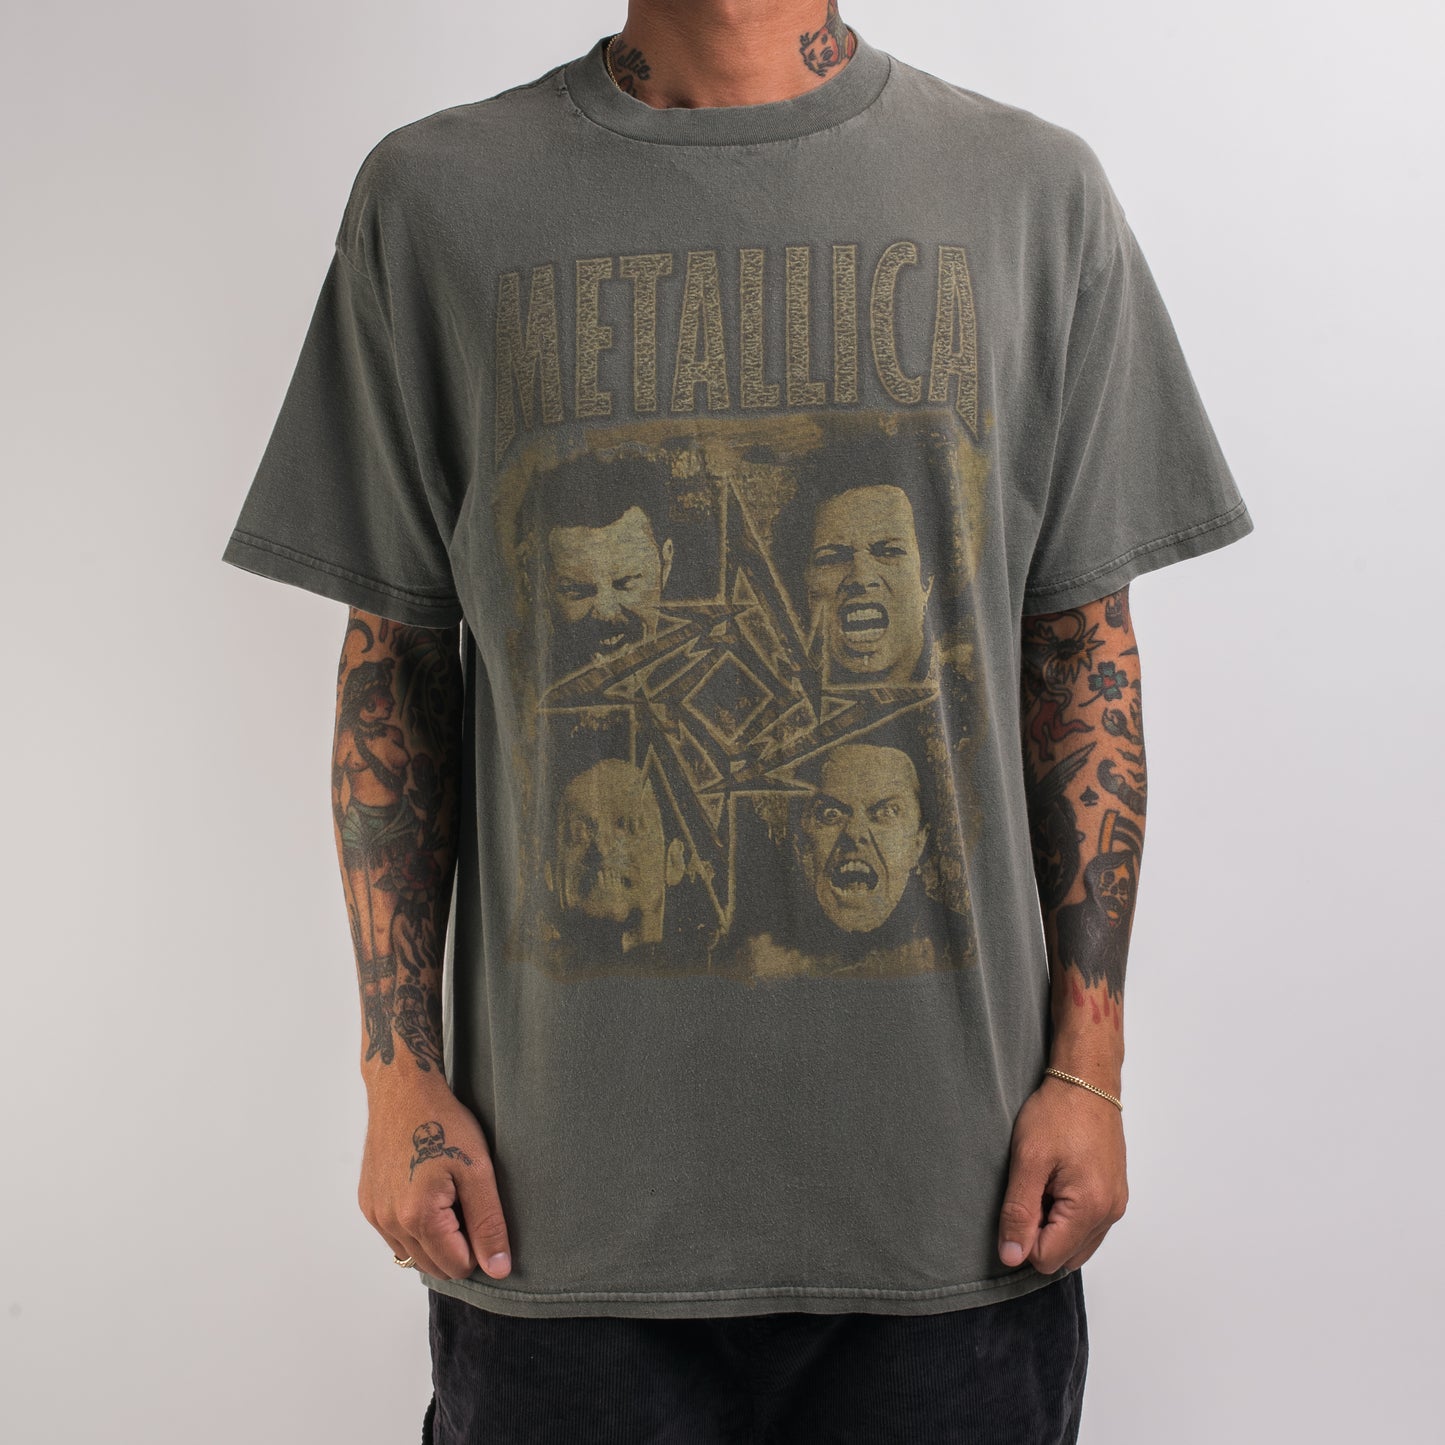 Vintage 1996 Metallica Poor Touring Me T-Shirt